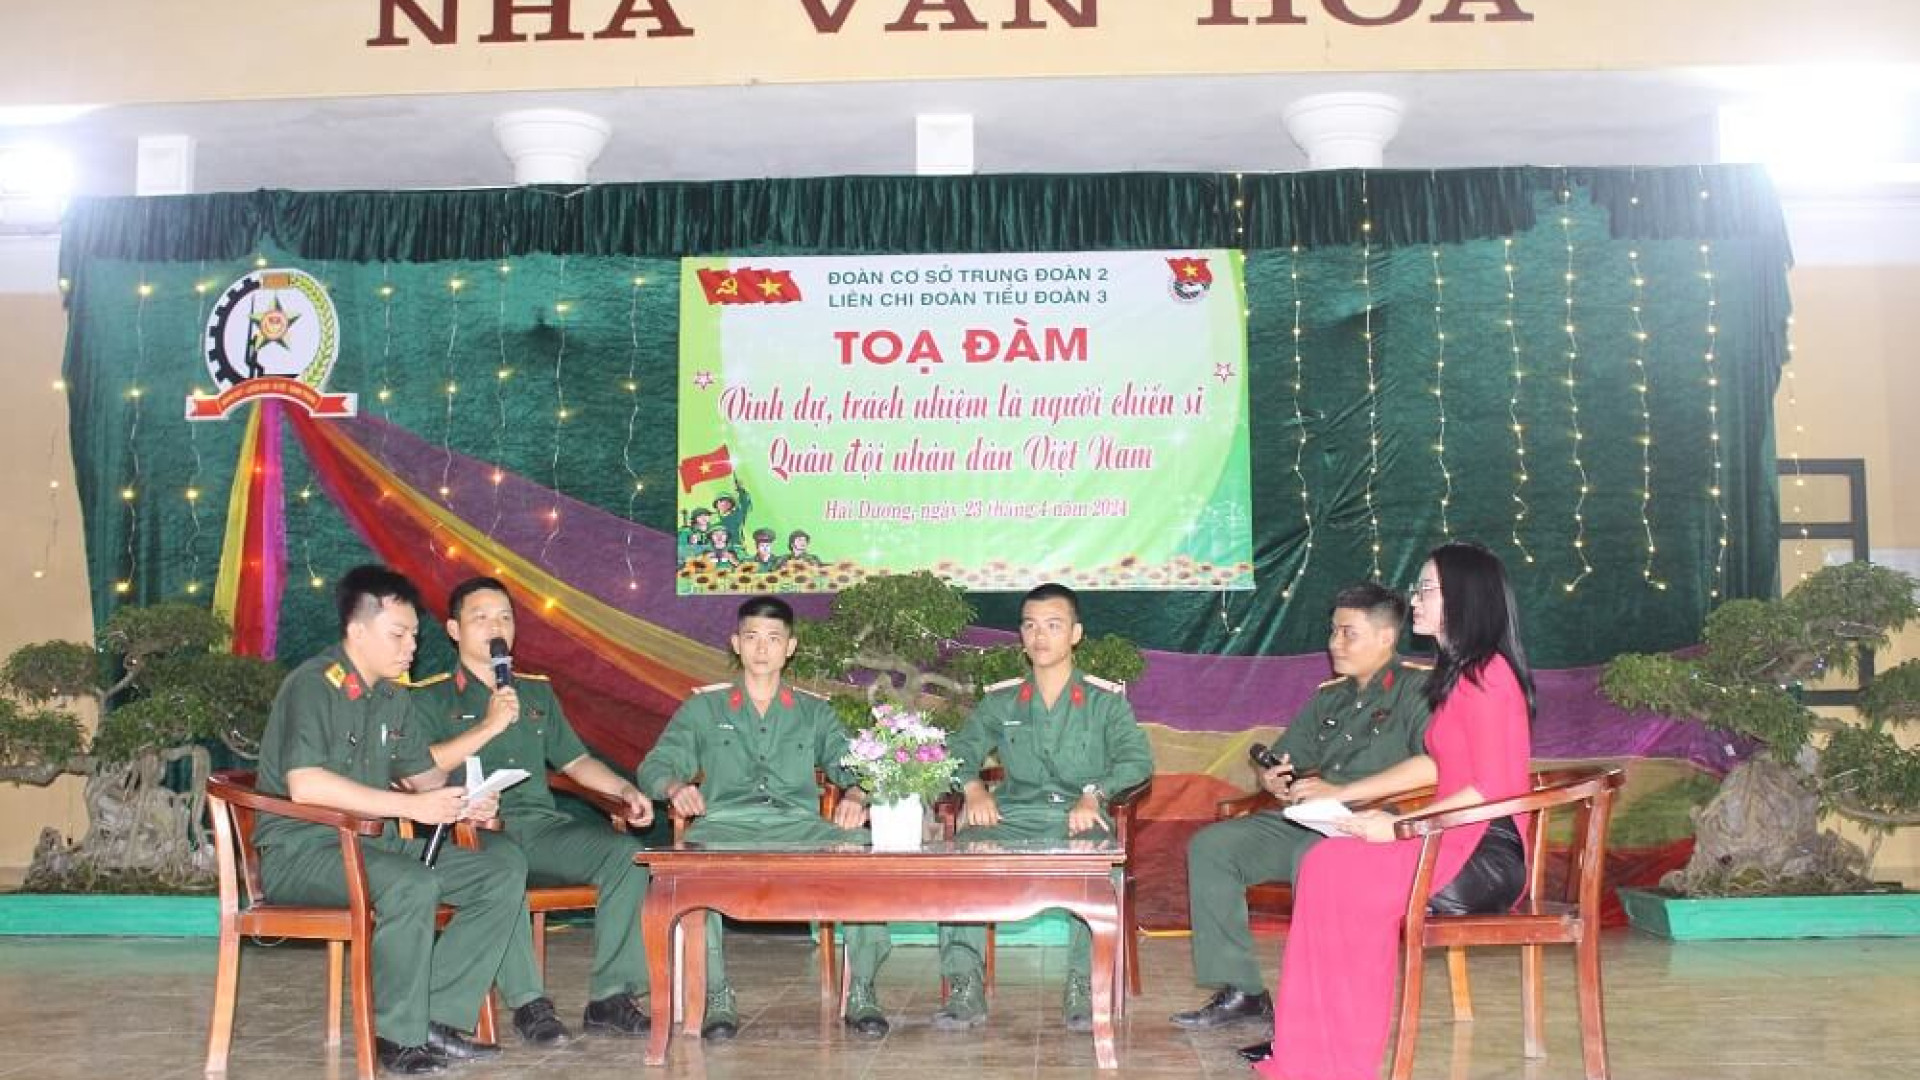 Liên chi đoàn Tiểu đoàn 3 thuộc Đoàn cơ sở Trung đoàn 2: Tọa đàm “Vinh dự, trách nhiệm là người chiến sĩ Quân đội Nhân dân Việt Nam”